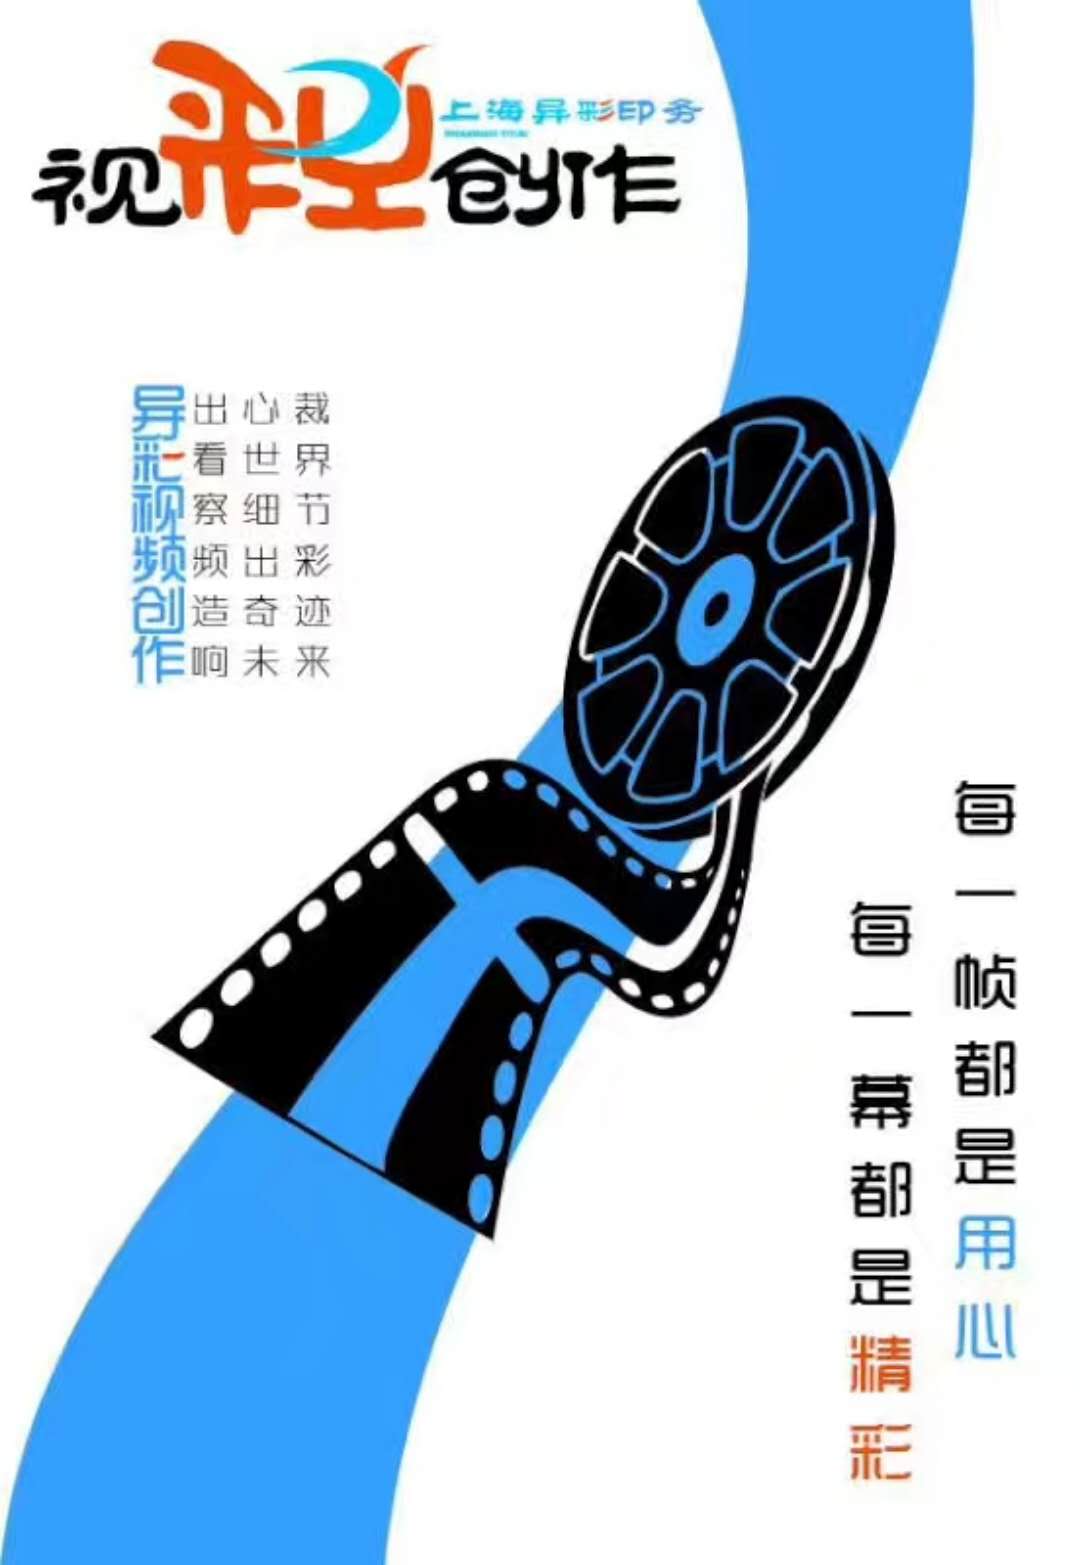 上海浦东新区 三维动画演示片 产品动画演示片 企业宣传片